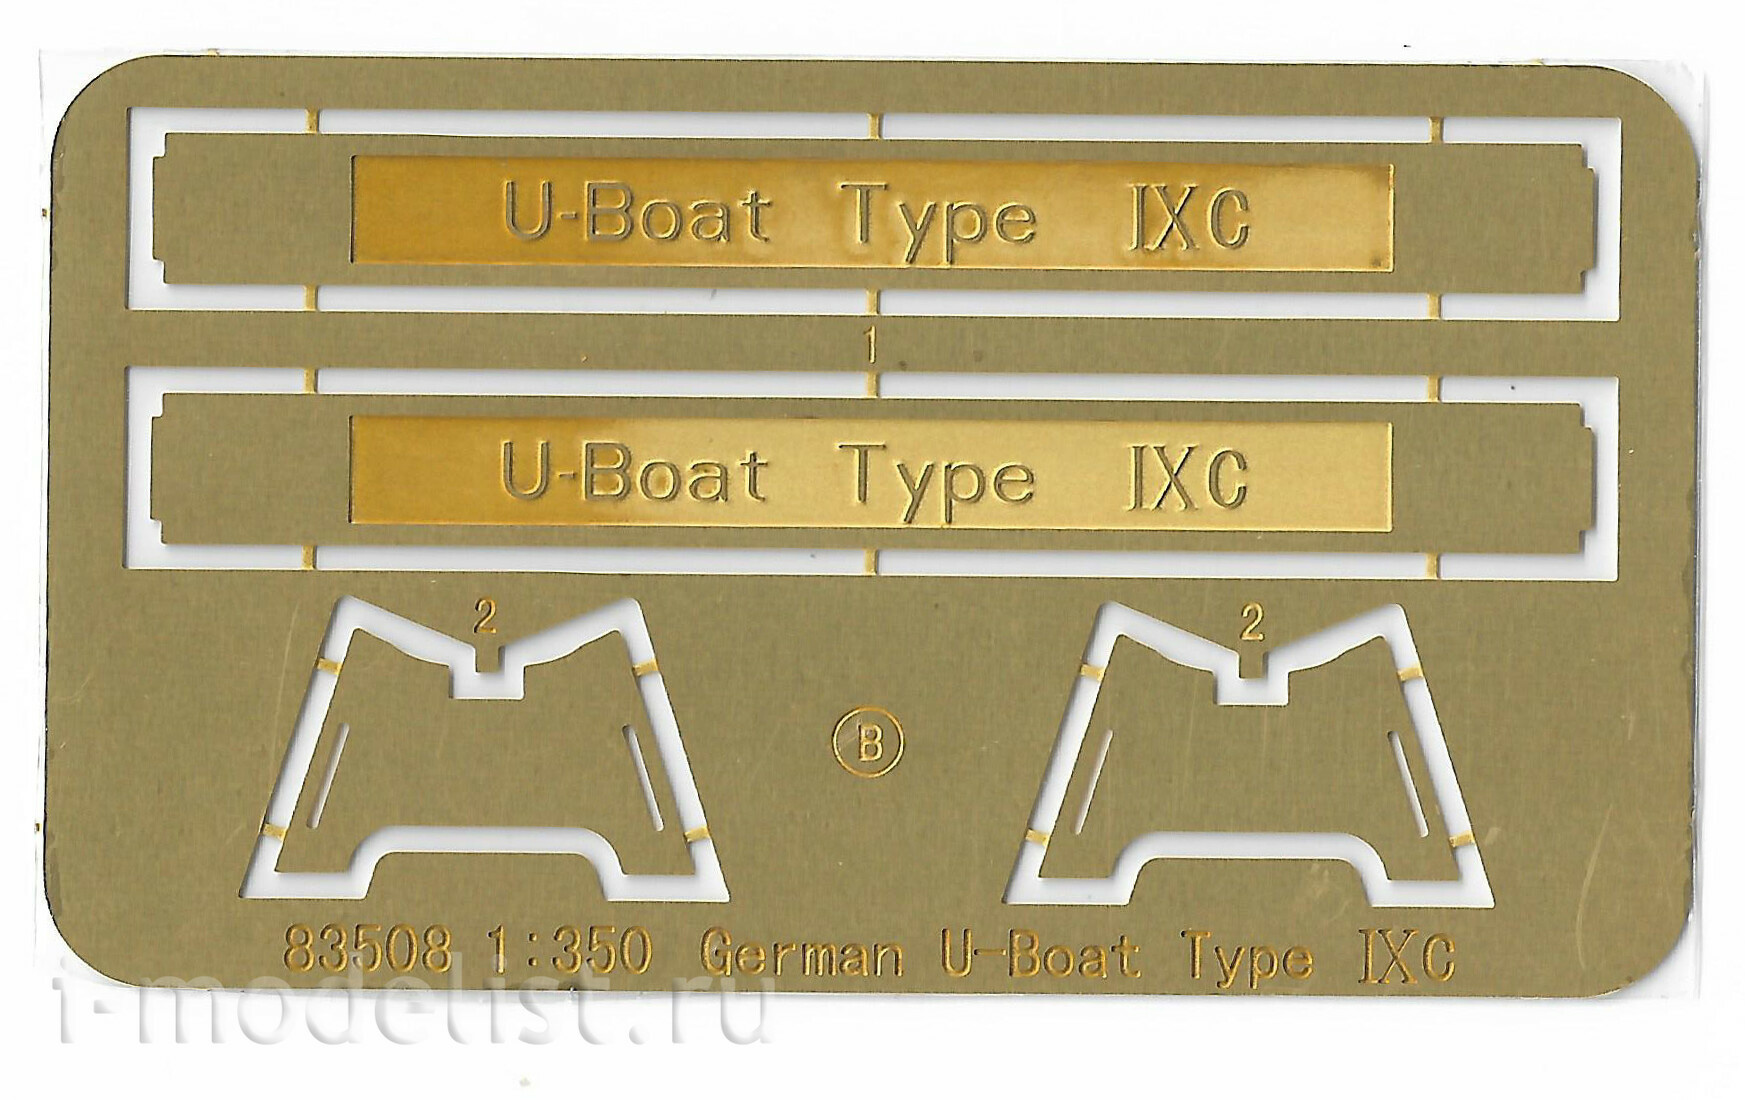 Hobby Boss 83508 1/350 German U-Boot Type IX C